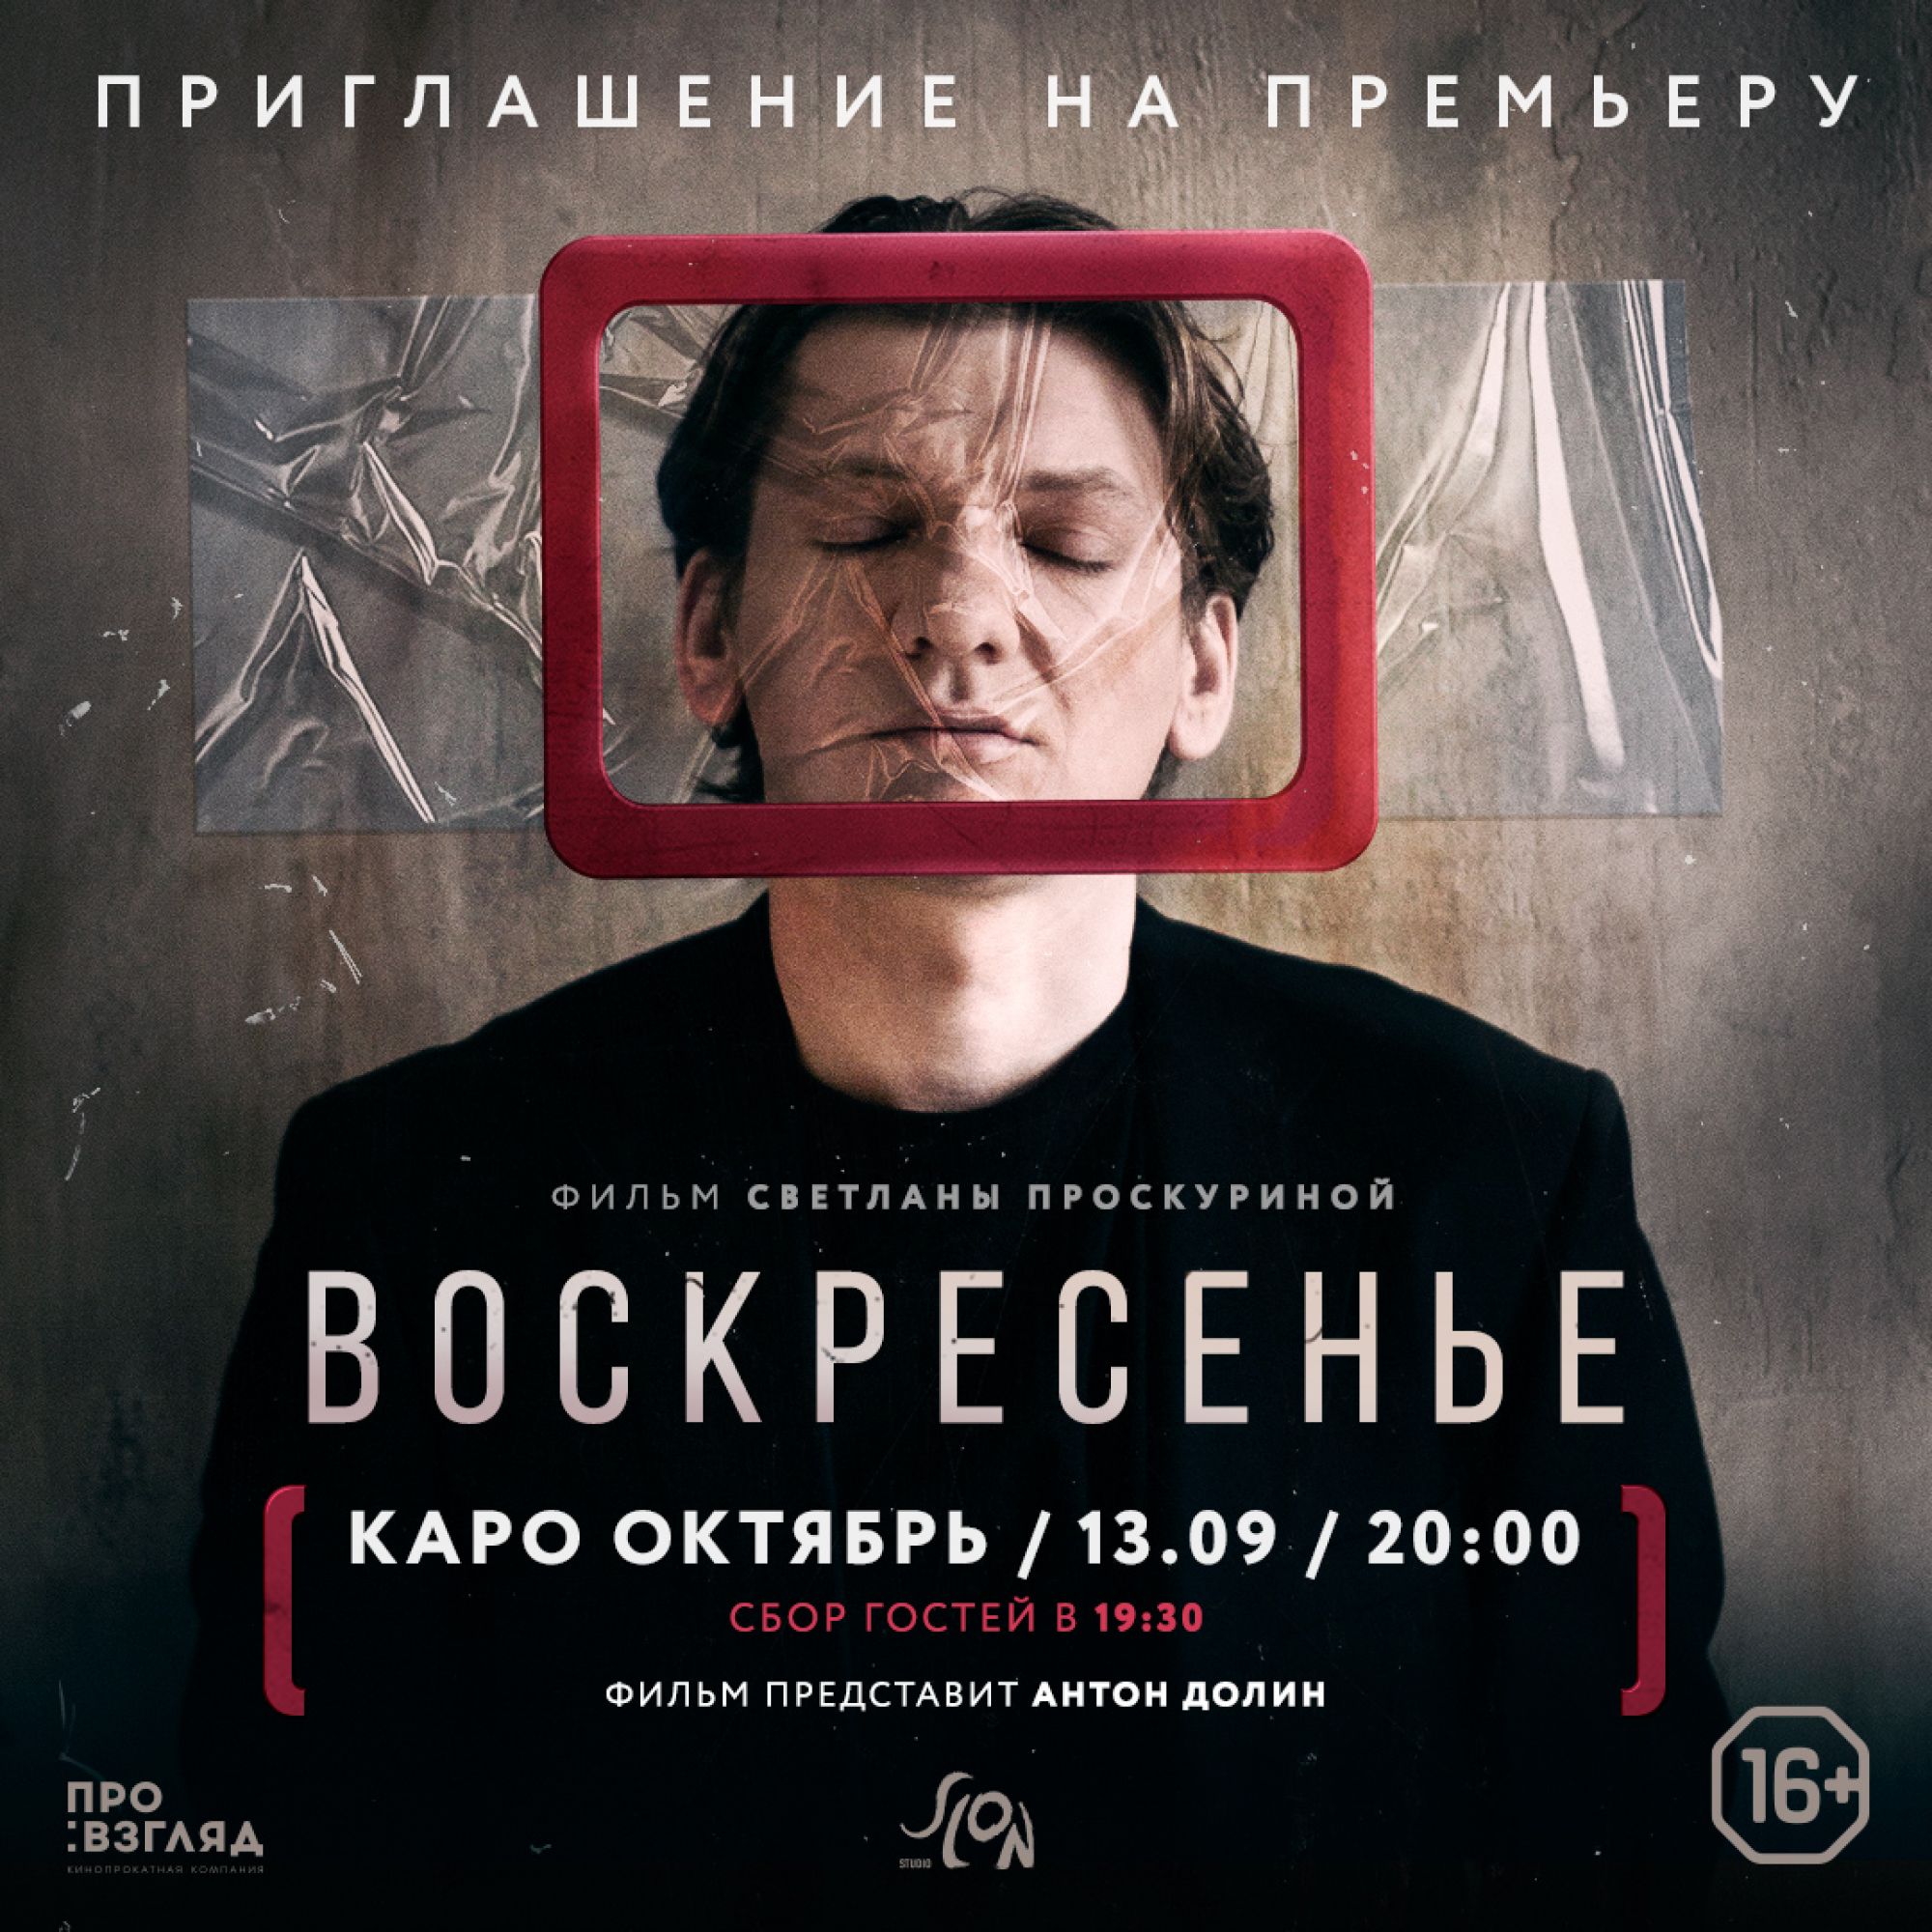 Сюжет фильма «Воскресенье» предсказал протесты против строительства храма в Екатеринбурге